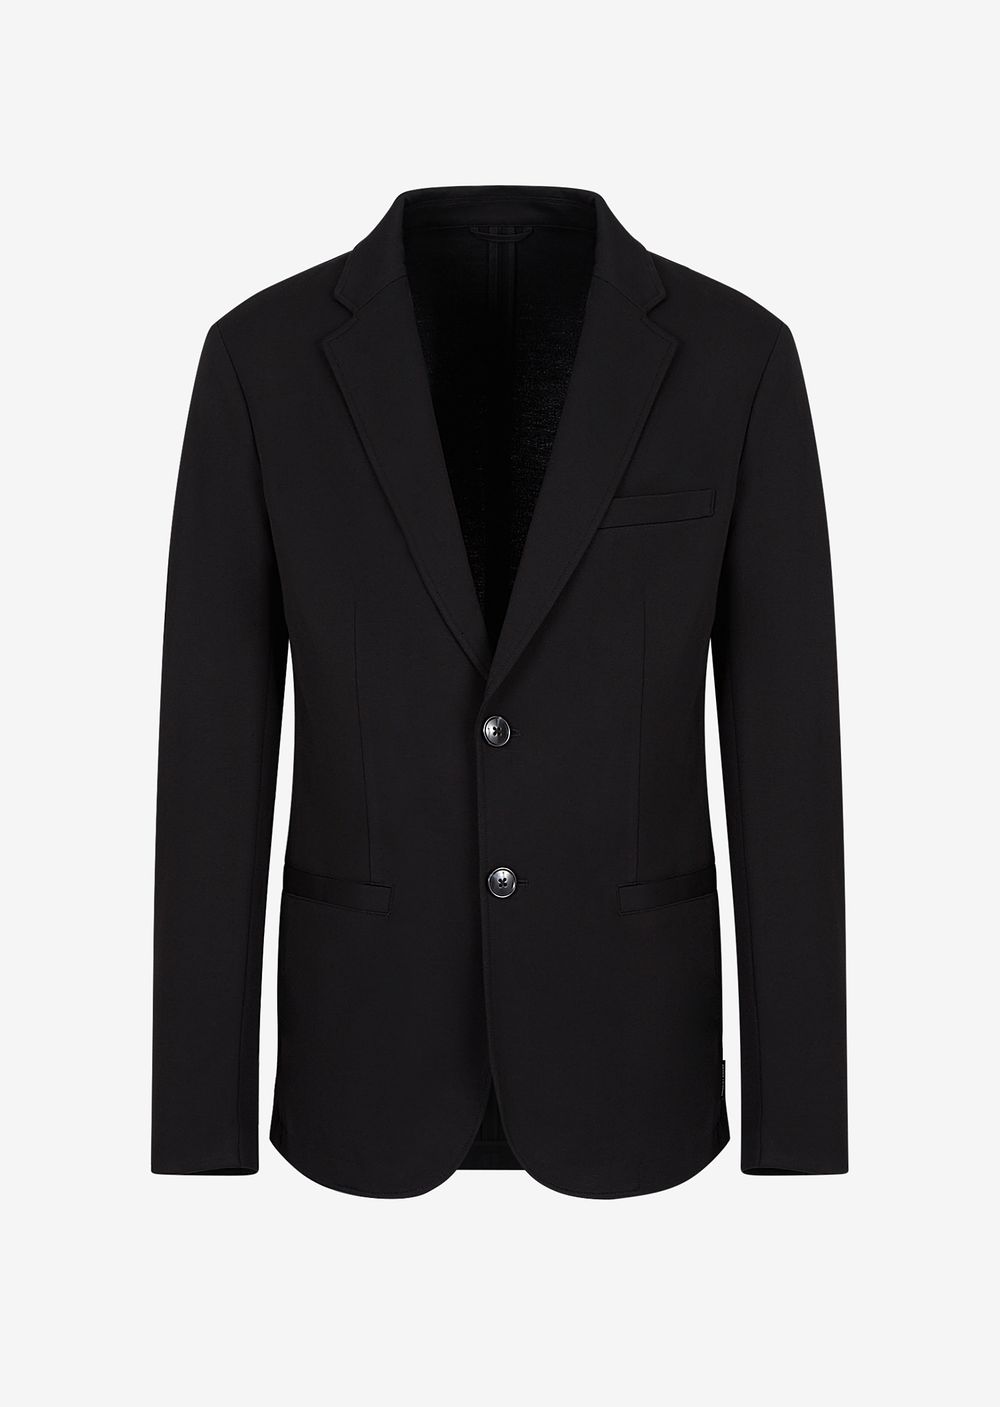 Пиджак окрашенный Armani Exchange, черный